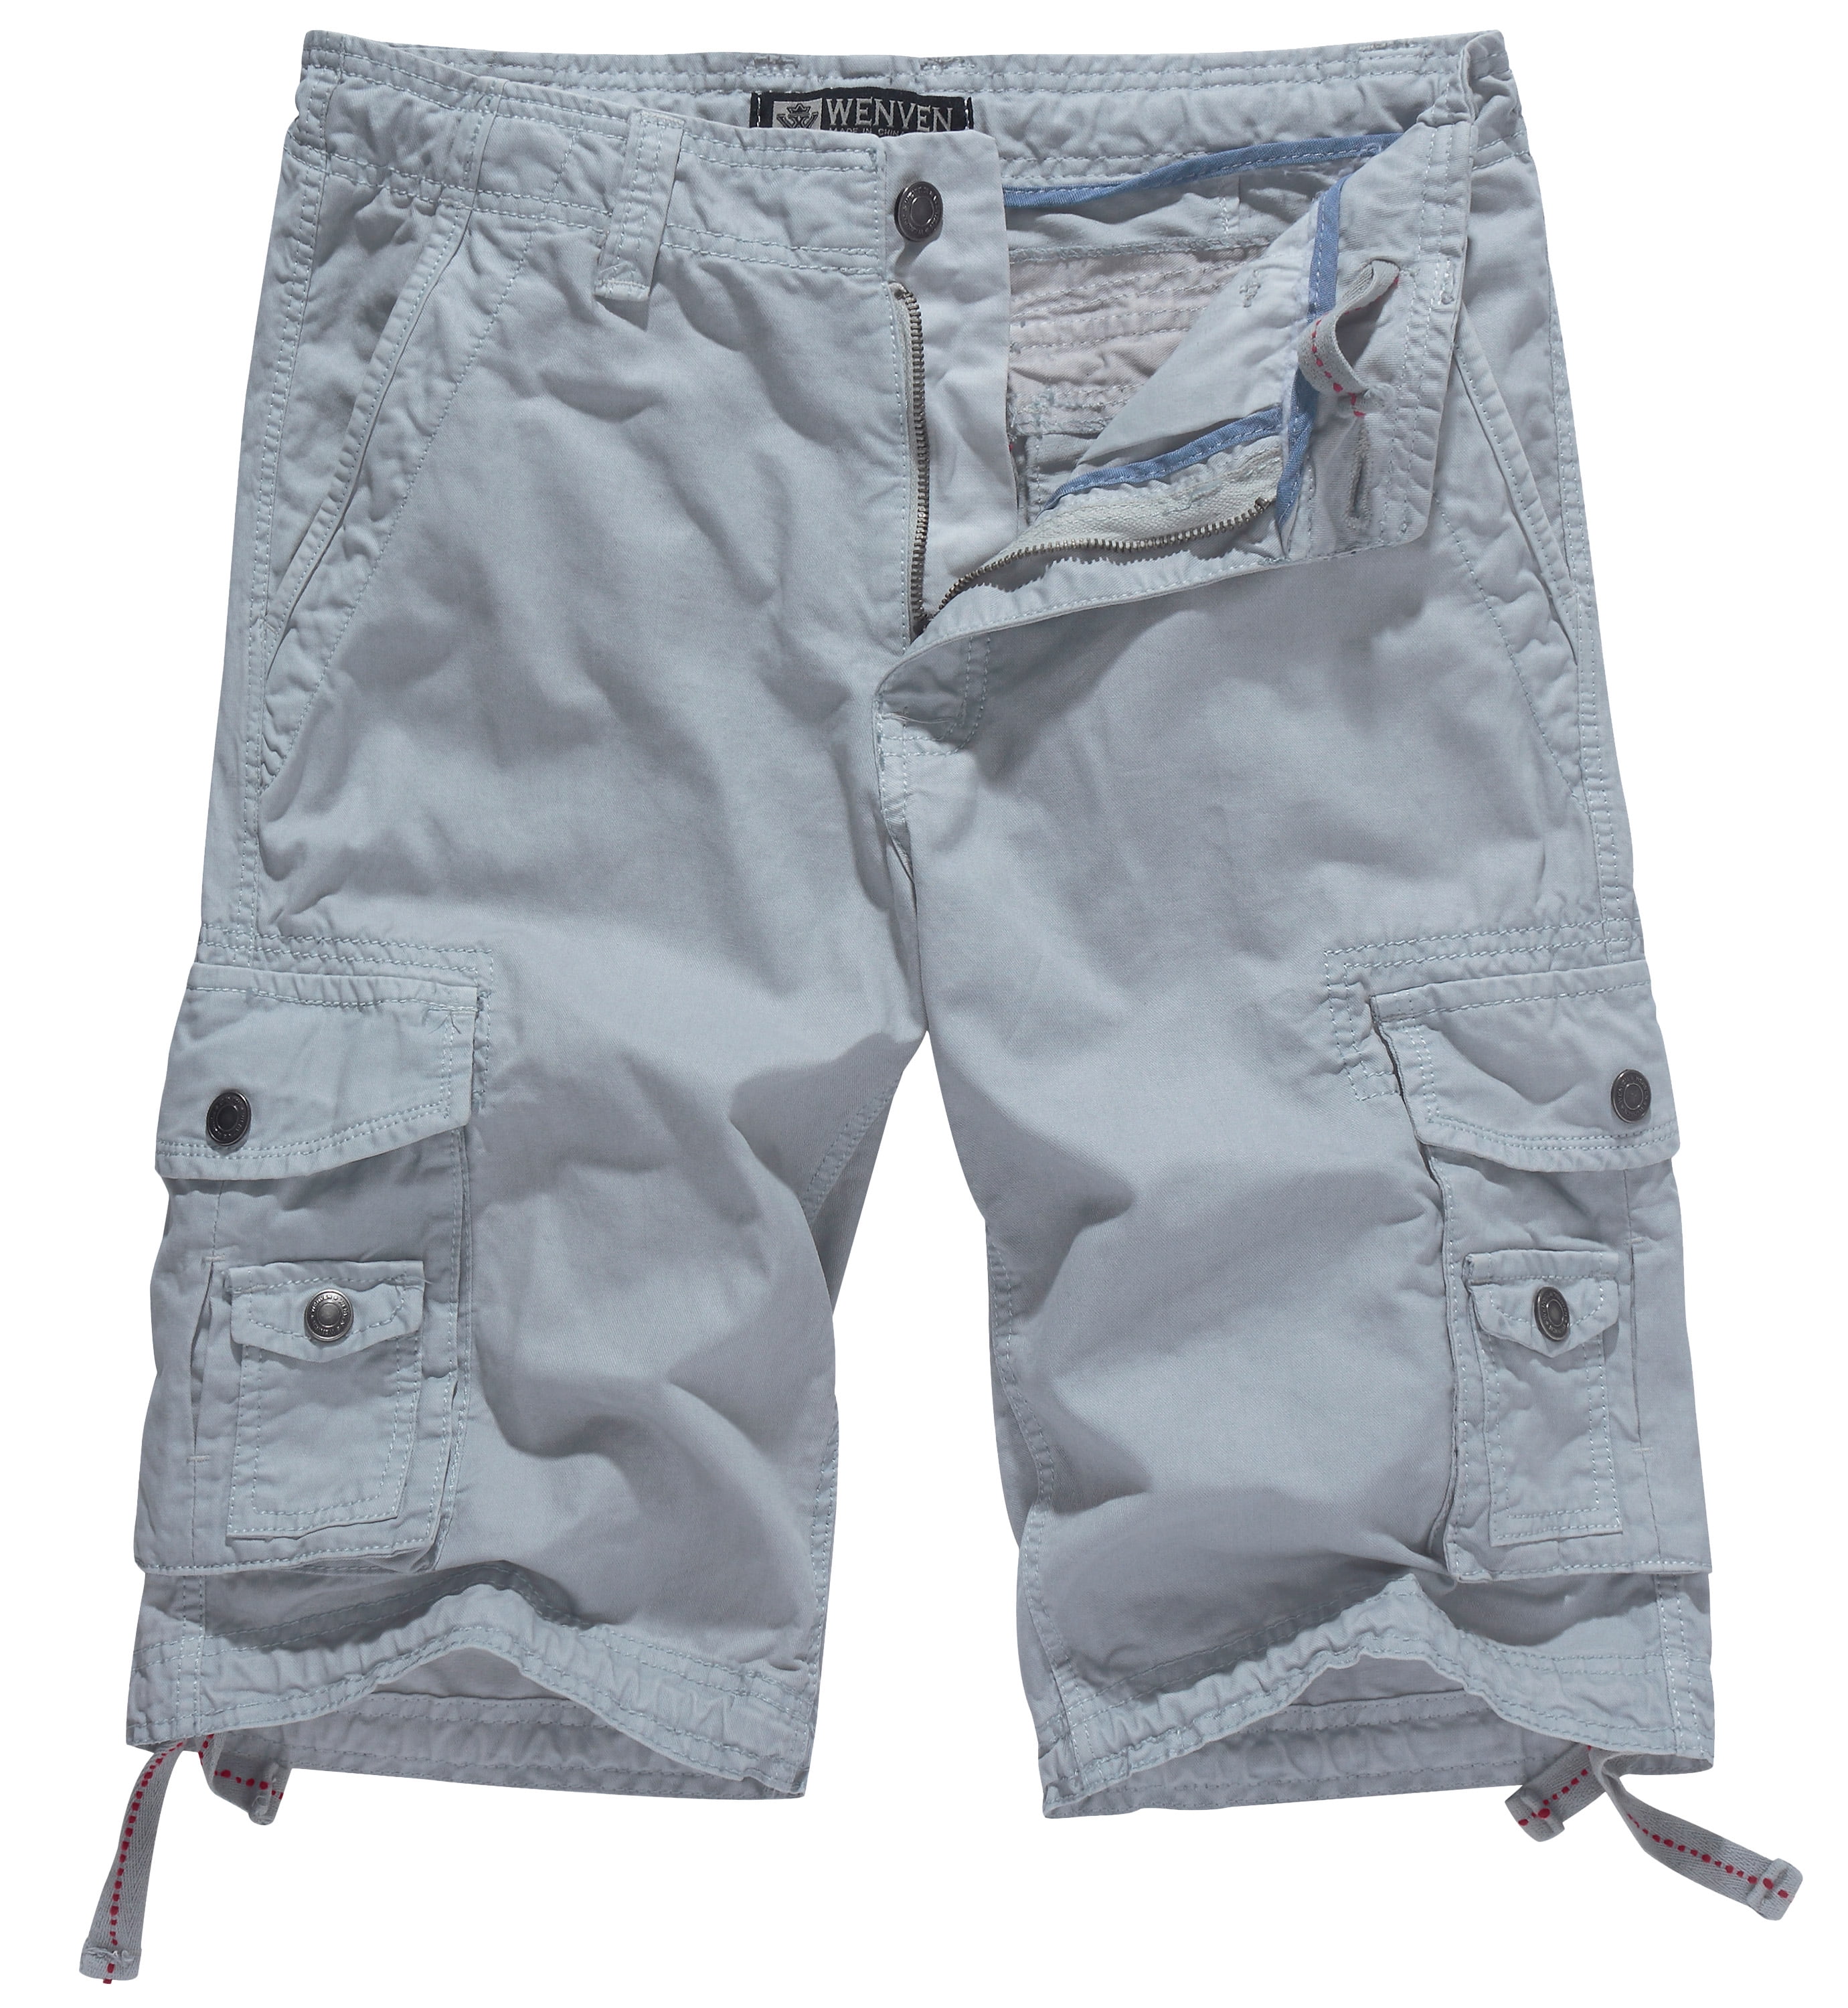 WenVen Men's Cotton Twill Cargo Shorts Outdoor Wear Lightweight, Light ...